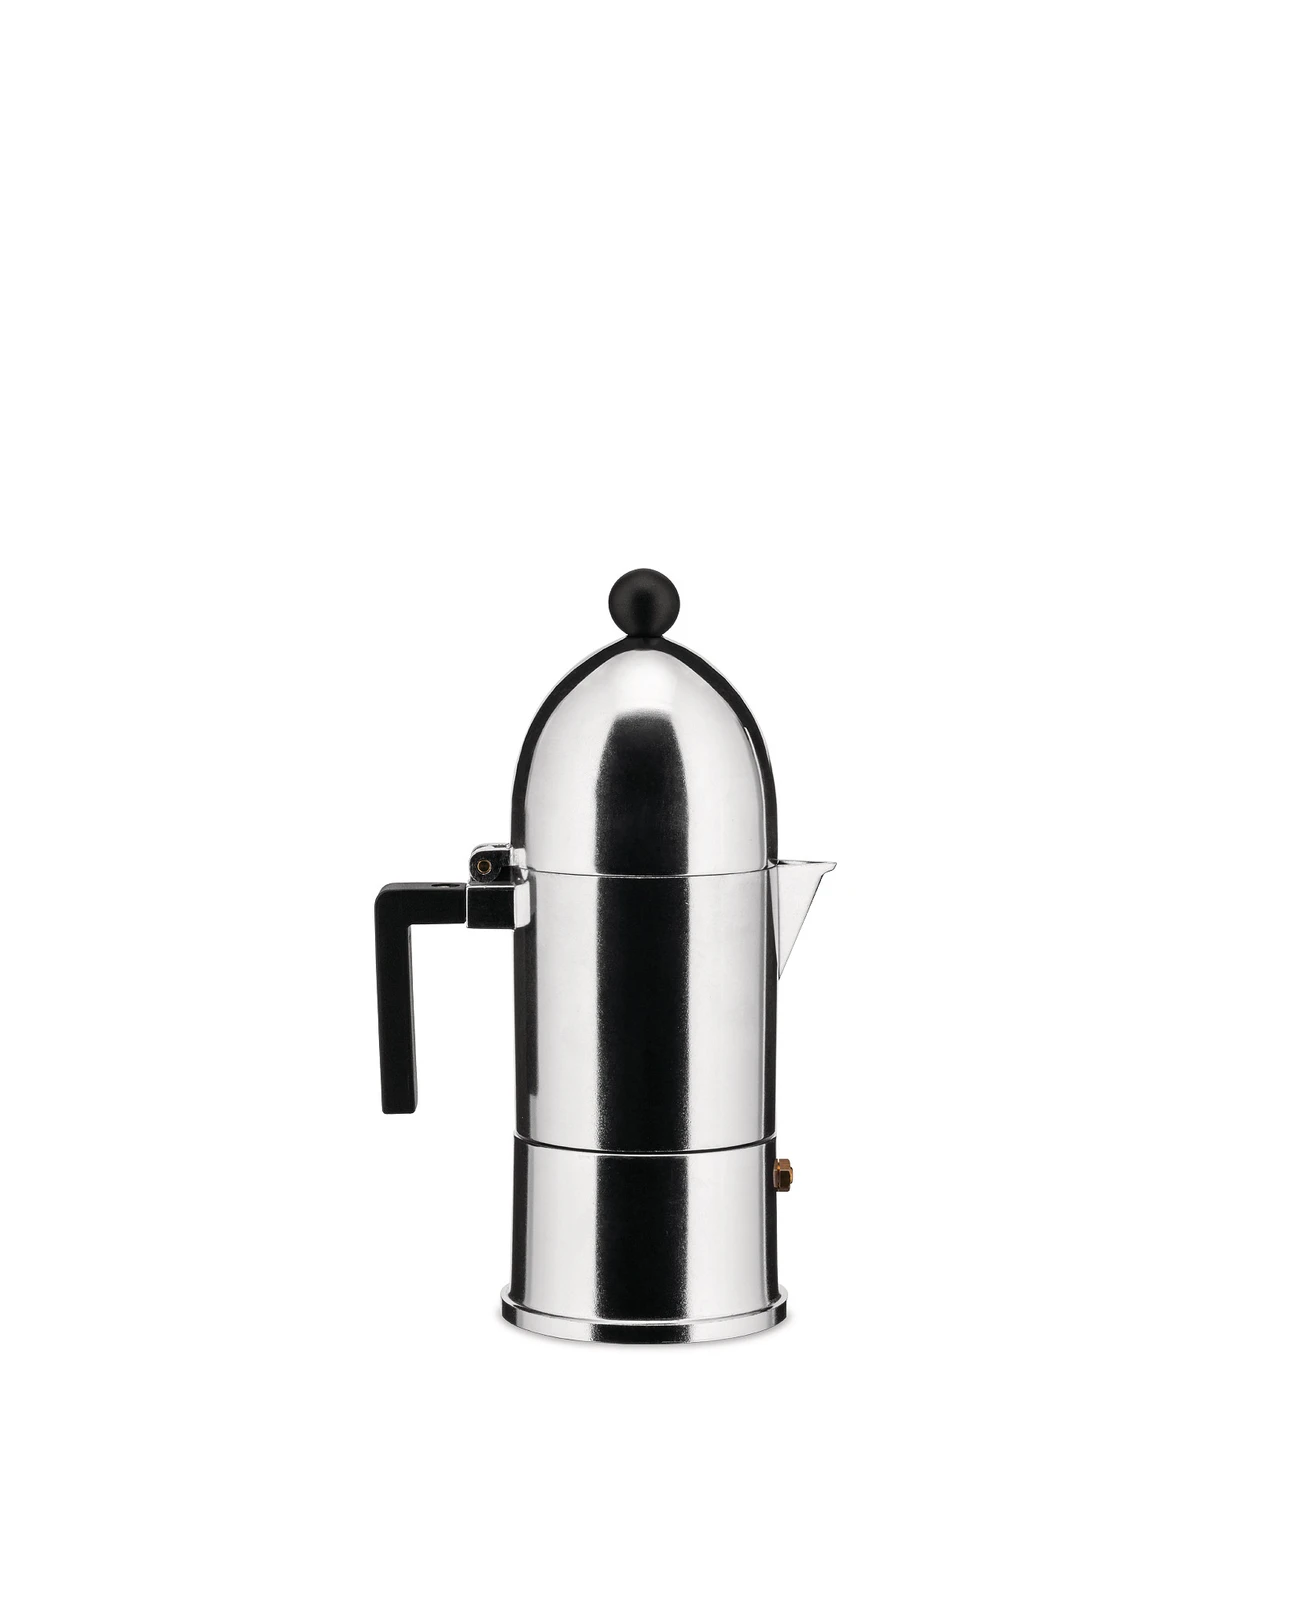 Alessi La Cupola Espresso Coffee Maker, 6 cups